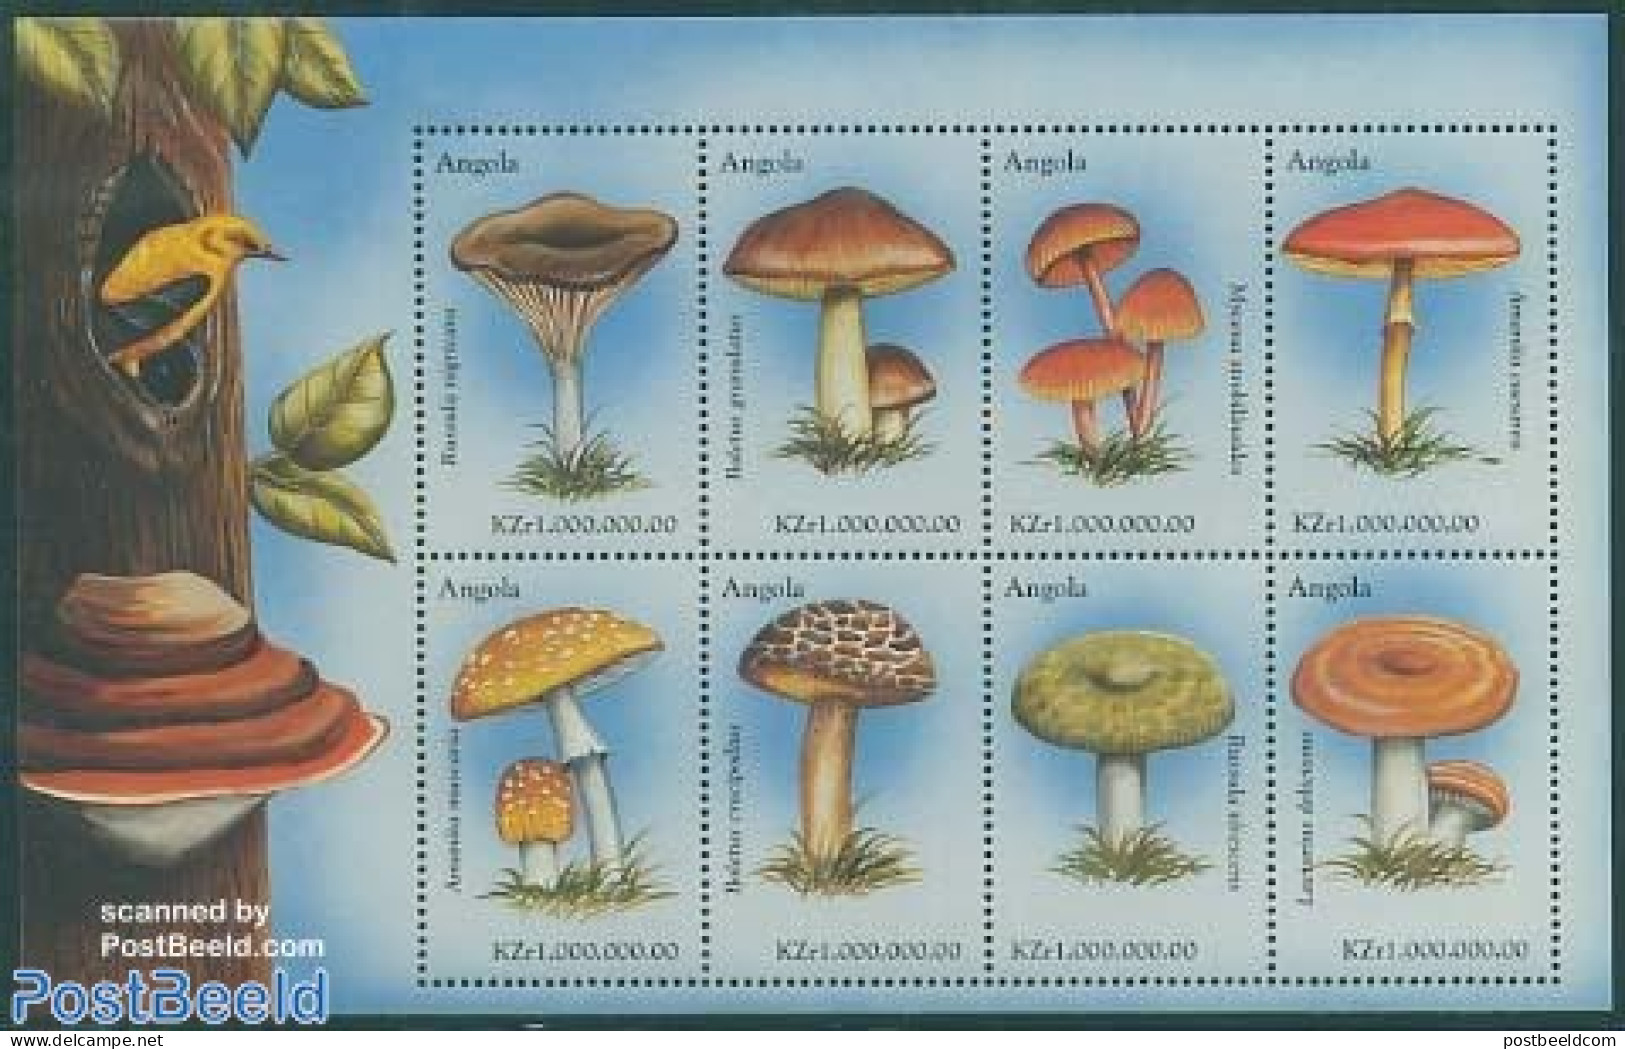 Angola 1999 Mushrooms 8v M/s, Russula Nigricans, Mint NH, Nature - Mushrooms - Hongos